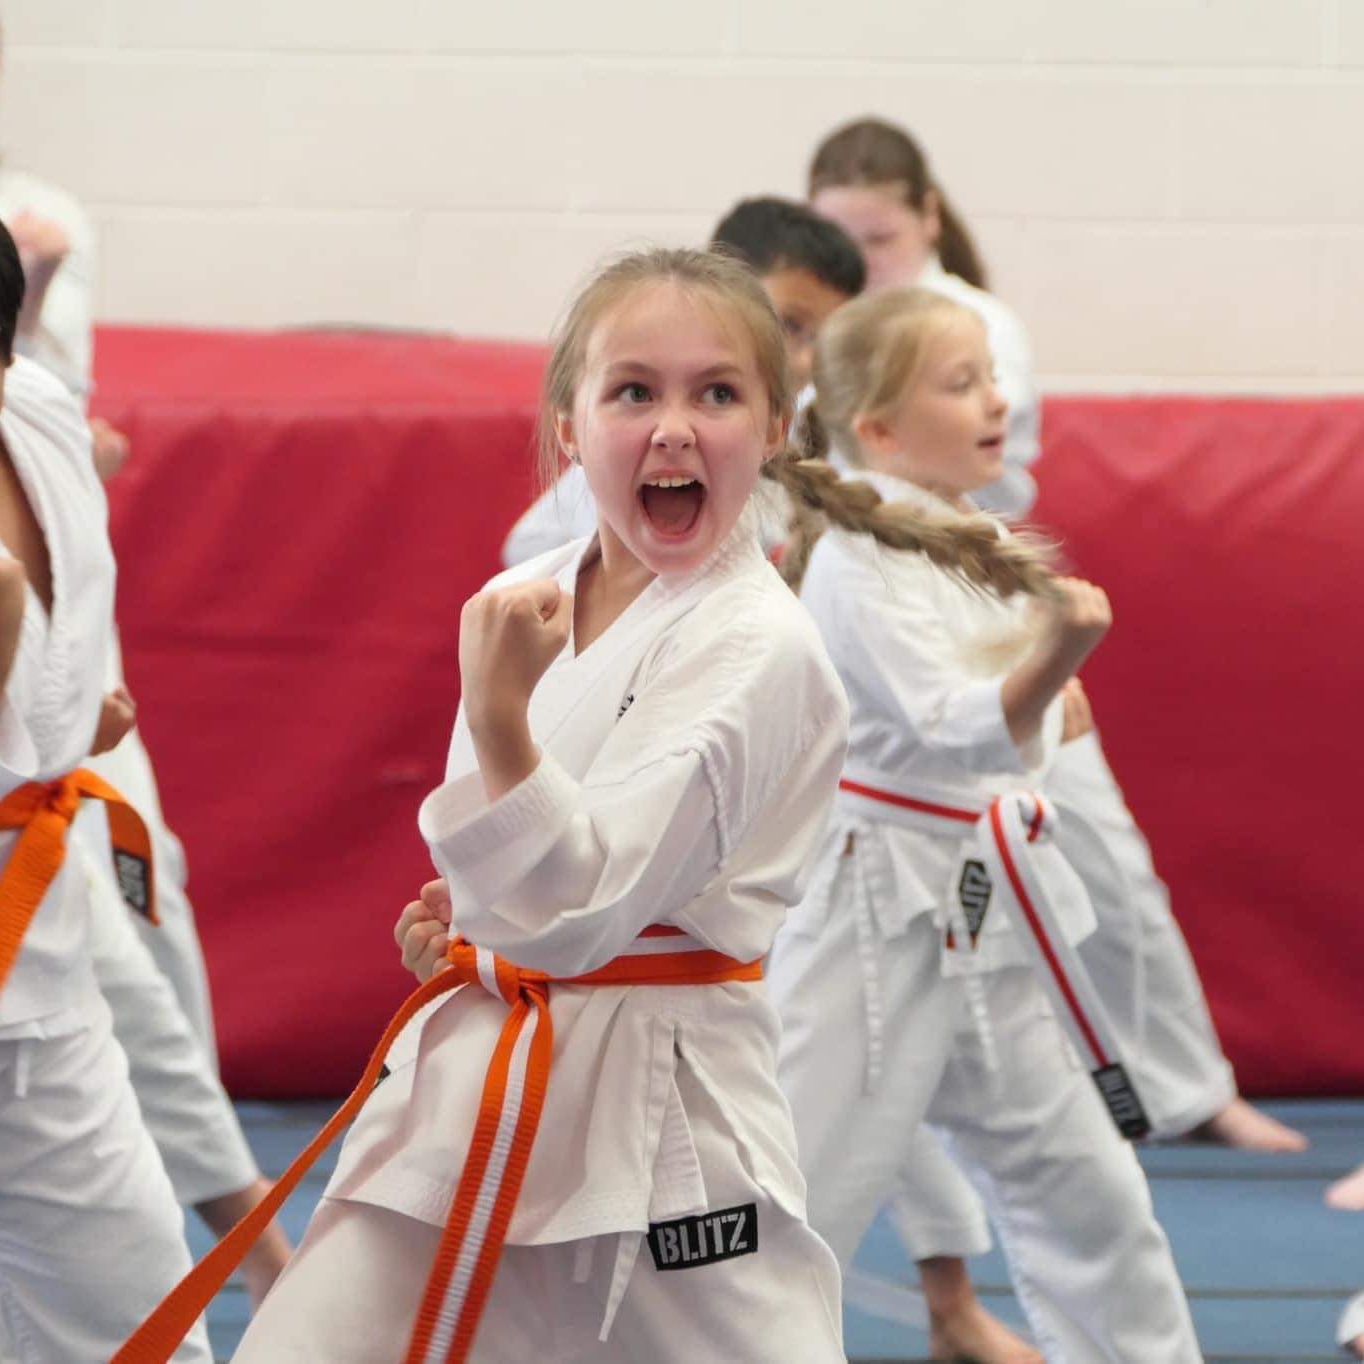 Children's Karate